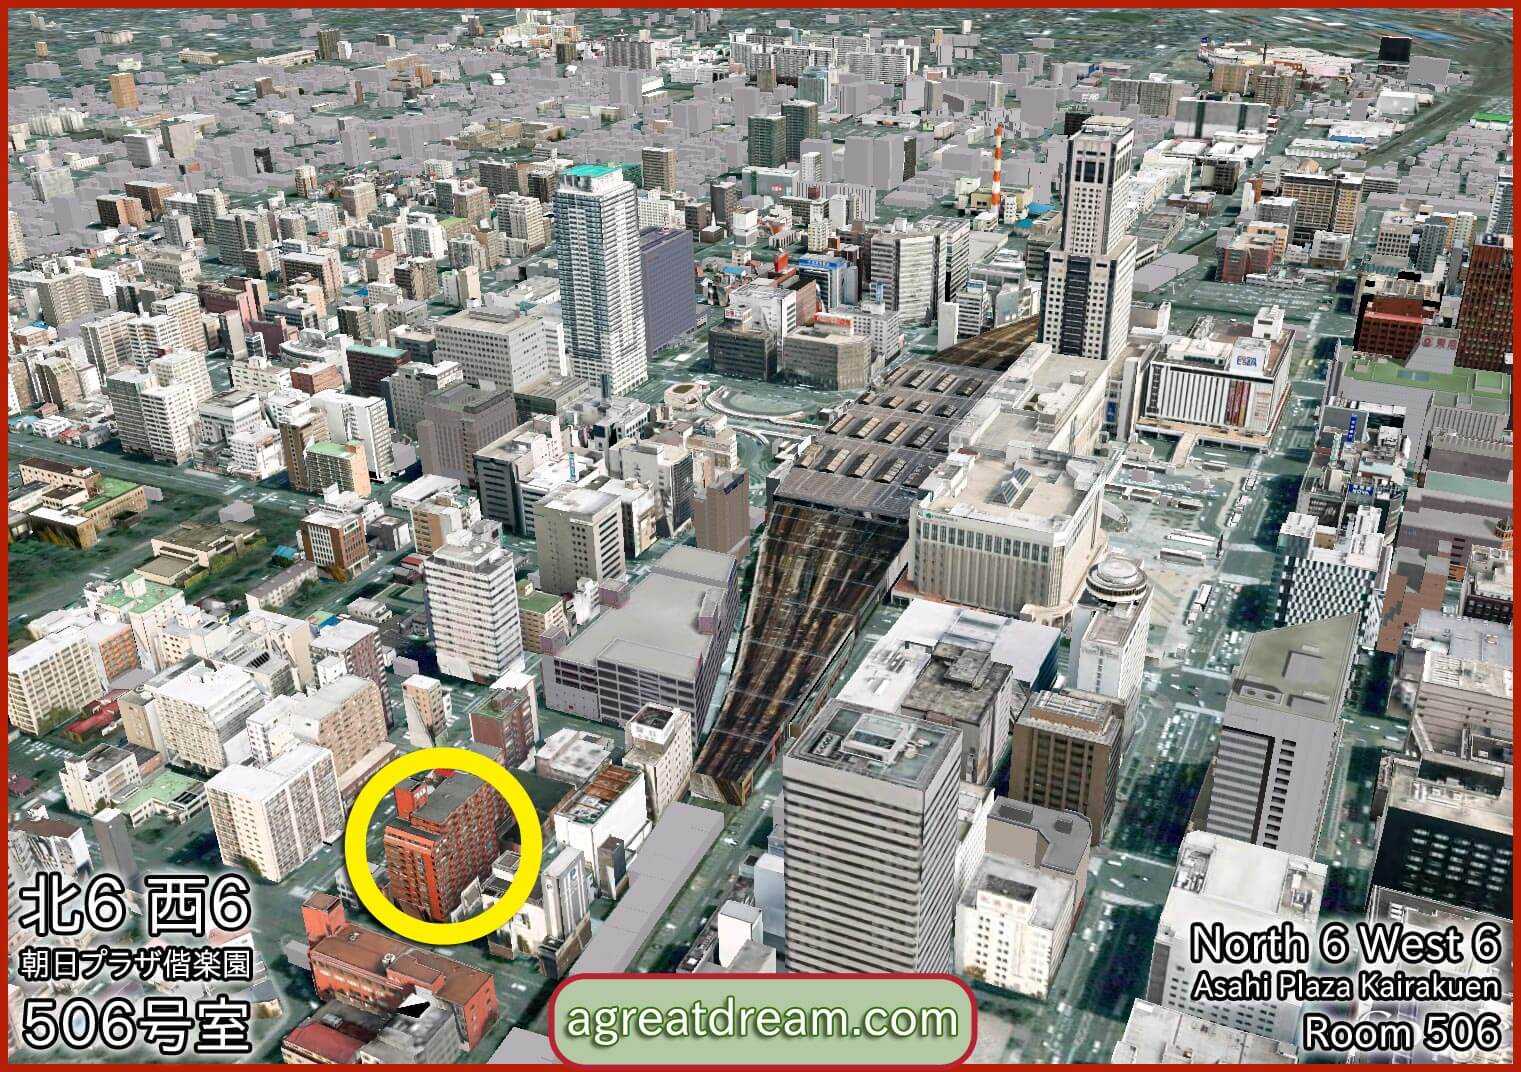 アクセスマップ Map: Sapporo Eikaiwa - agreatdream.com (Room 506, Asahi Plaza Kairakuen, 2-1, North 6 West 6, North Ward)